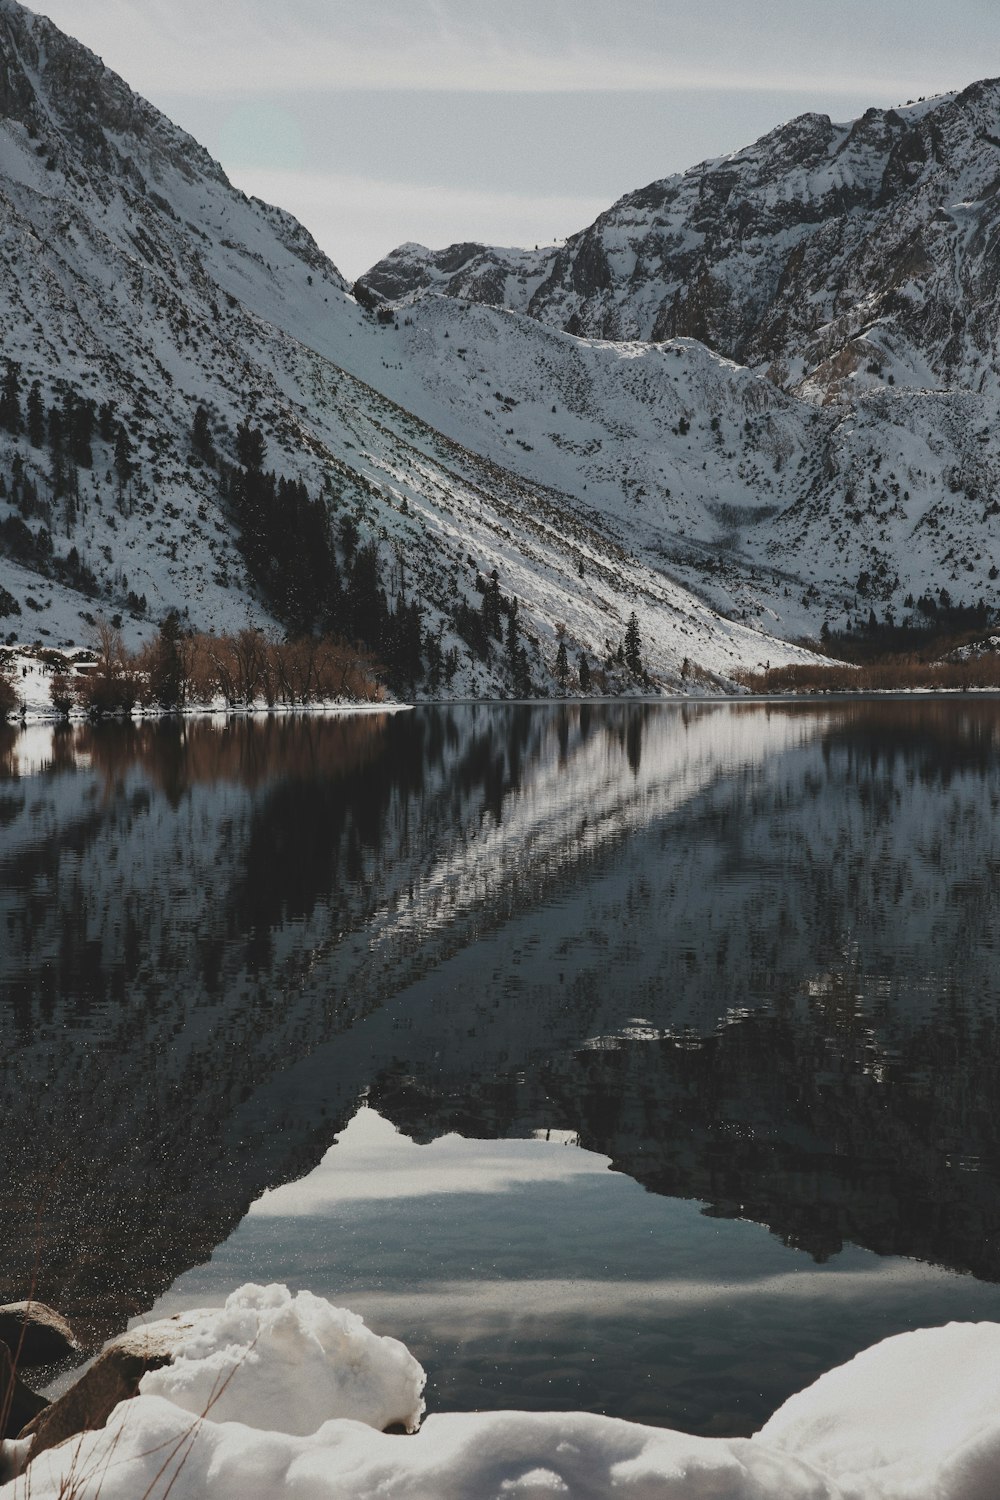 fotografia do lago e da montanha coberta de neve durante o dia